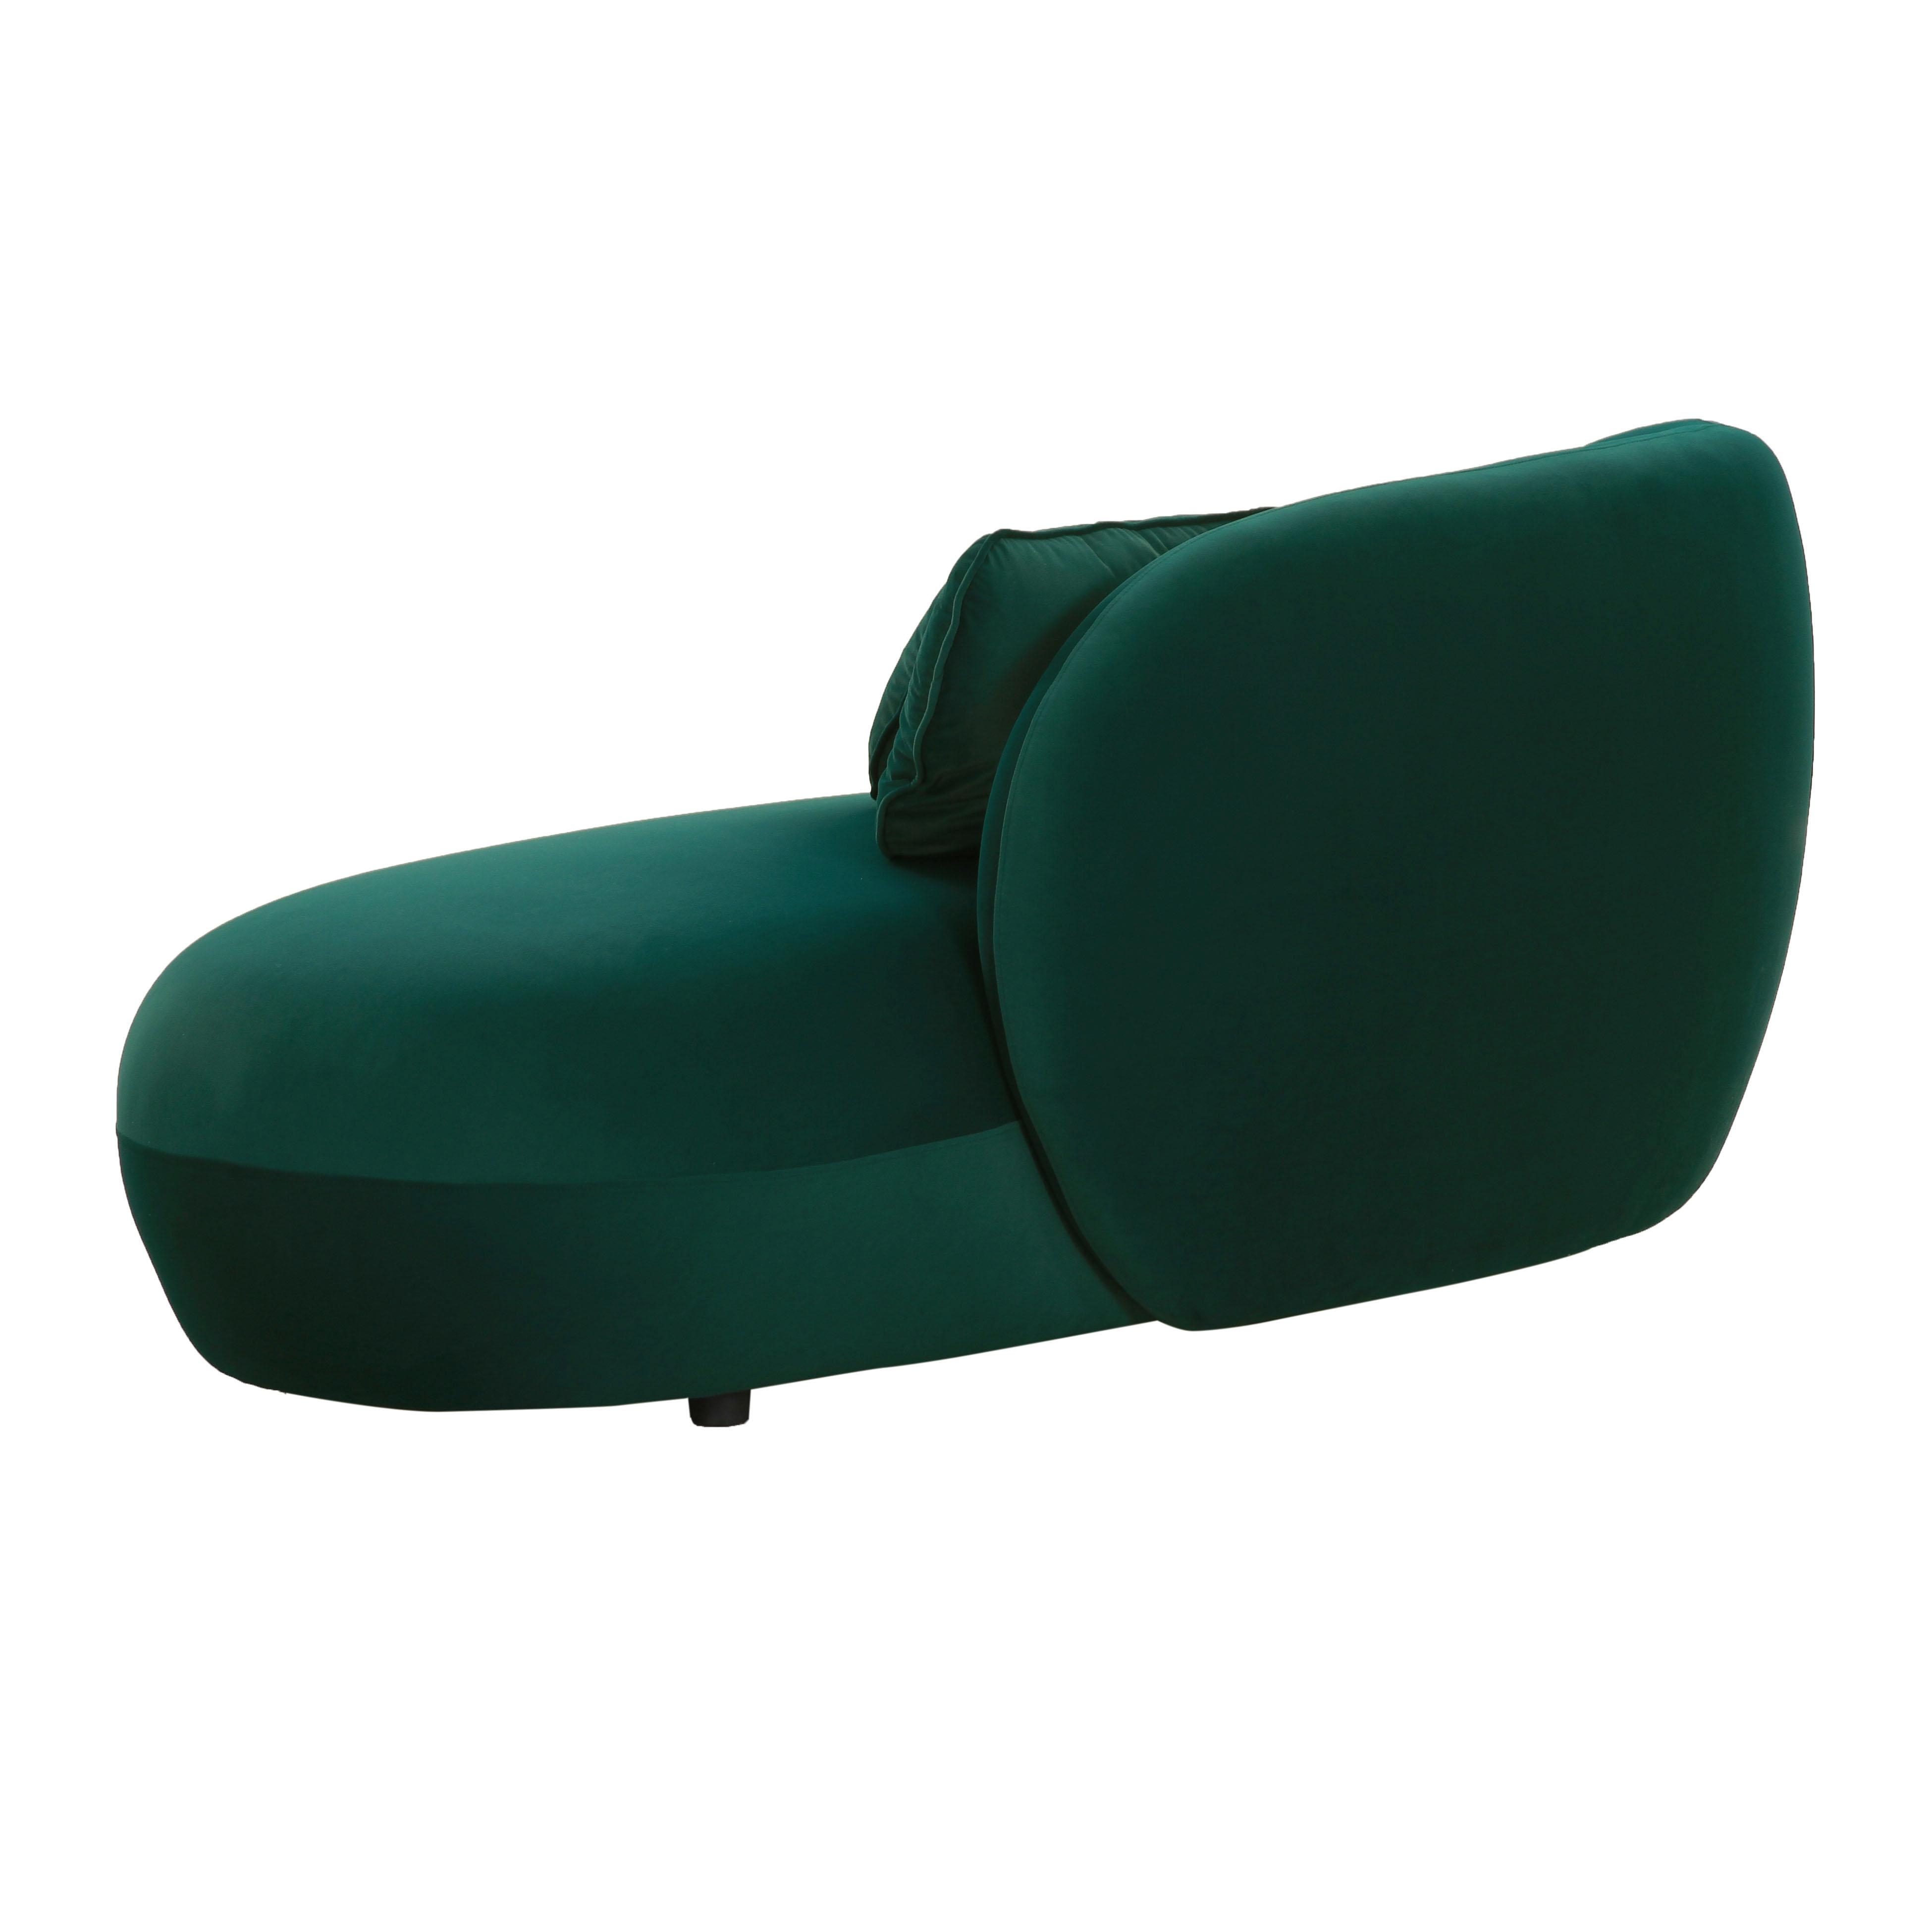 Galet Green Velvet Chaise - Image 2